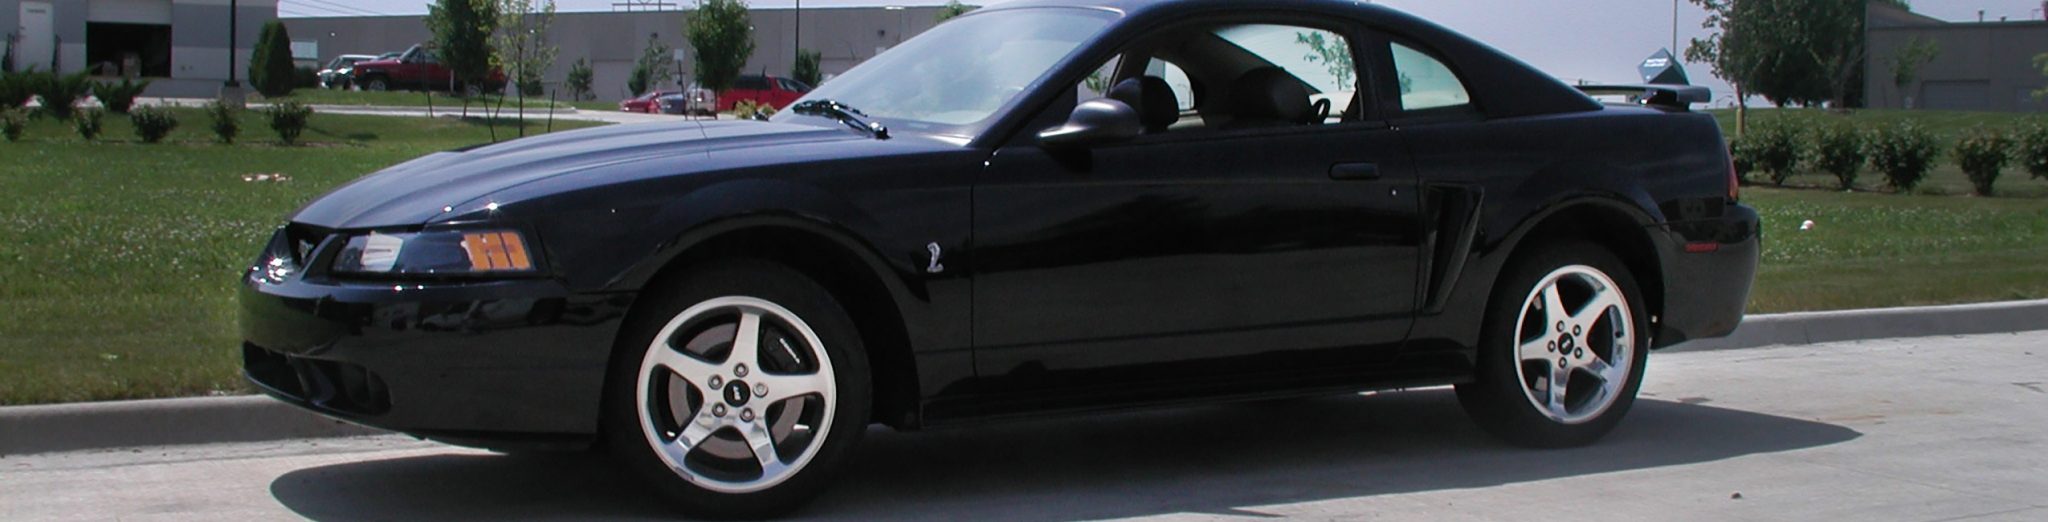 1999 - 01 Cobra (4.6 4V)